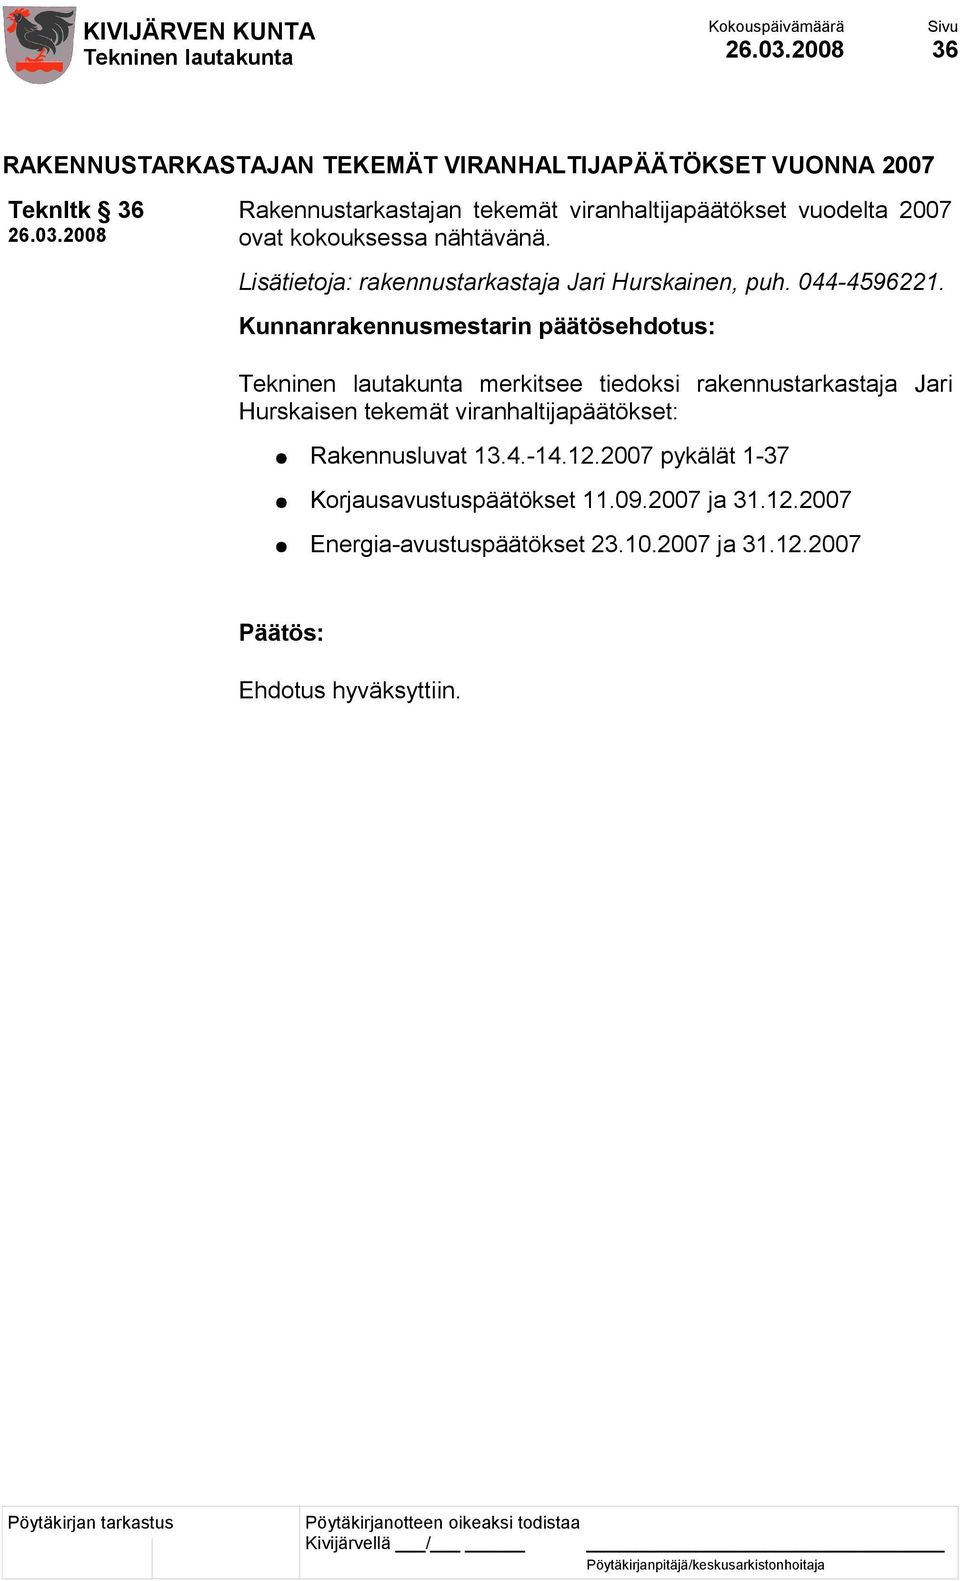 Lisätietoja: rakennustarkastaja Jari Hurskainen, puh. 044-4596221.